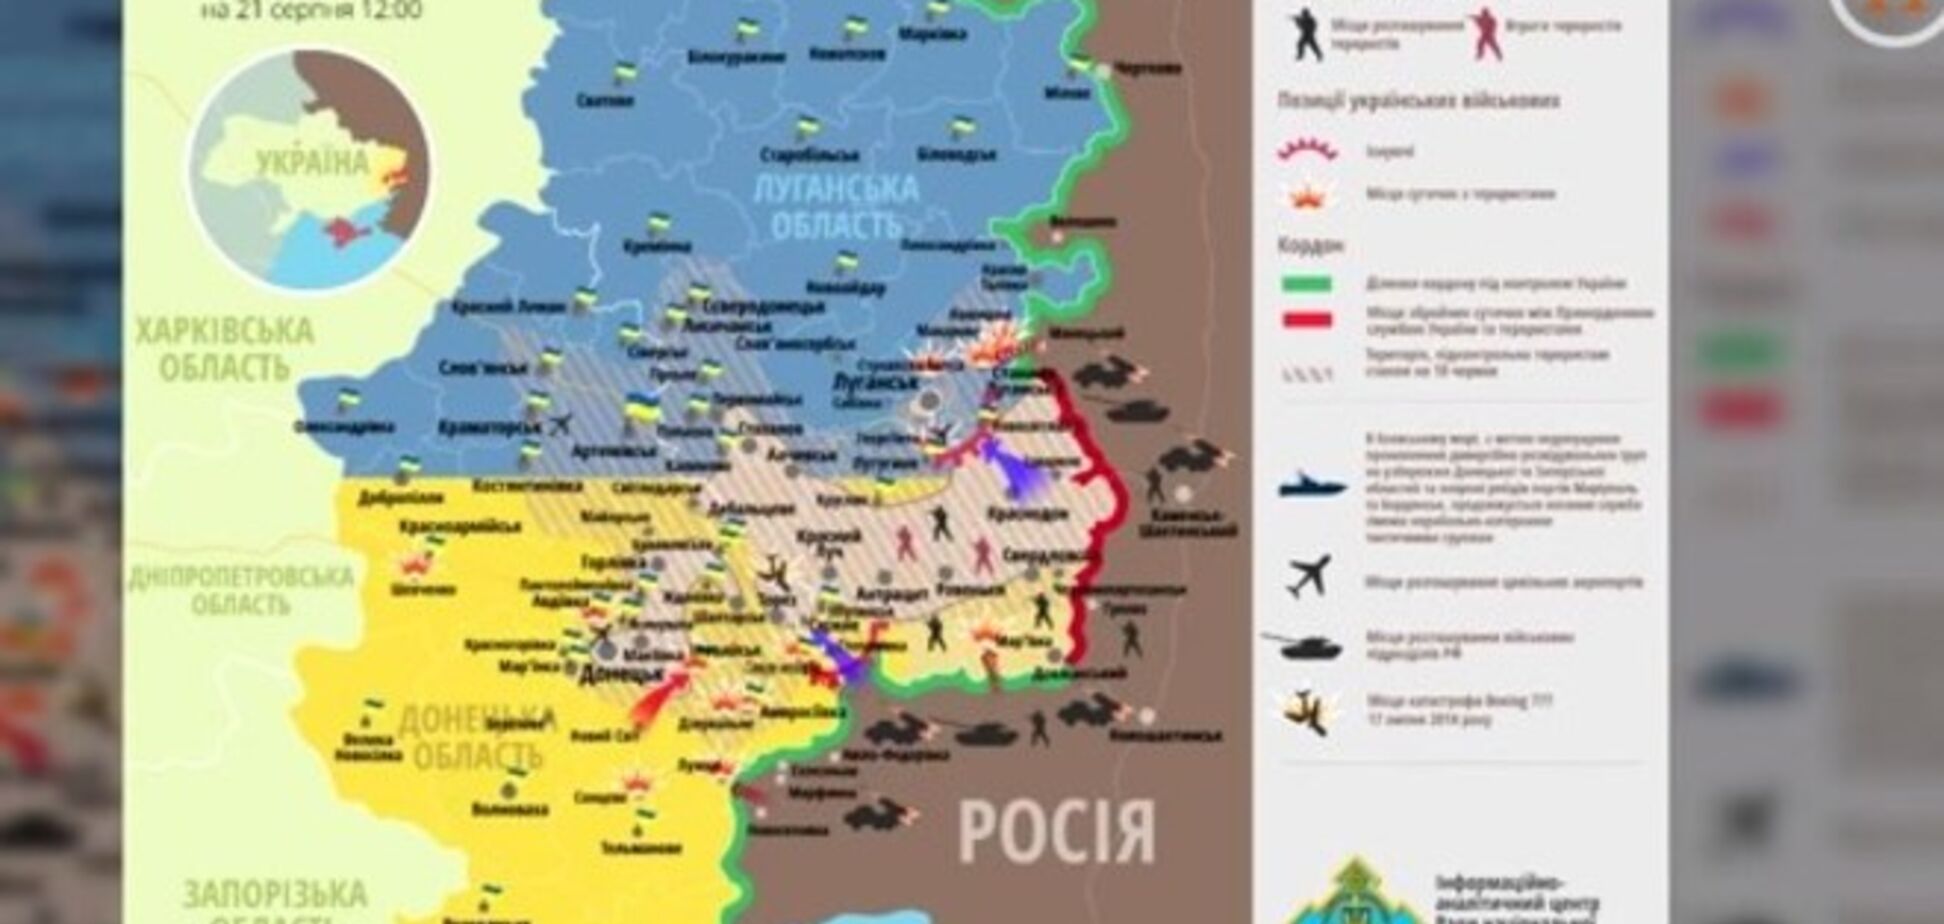 Как менялась ситуация на Донбассе за полгода: видеоинфографика побед и поражений АТО